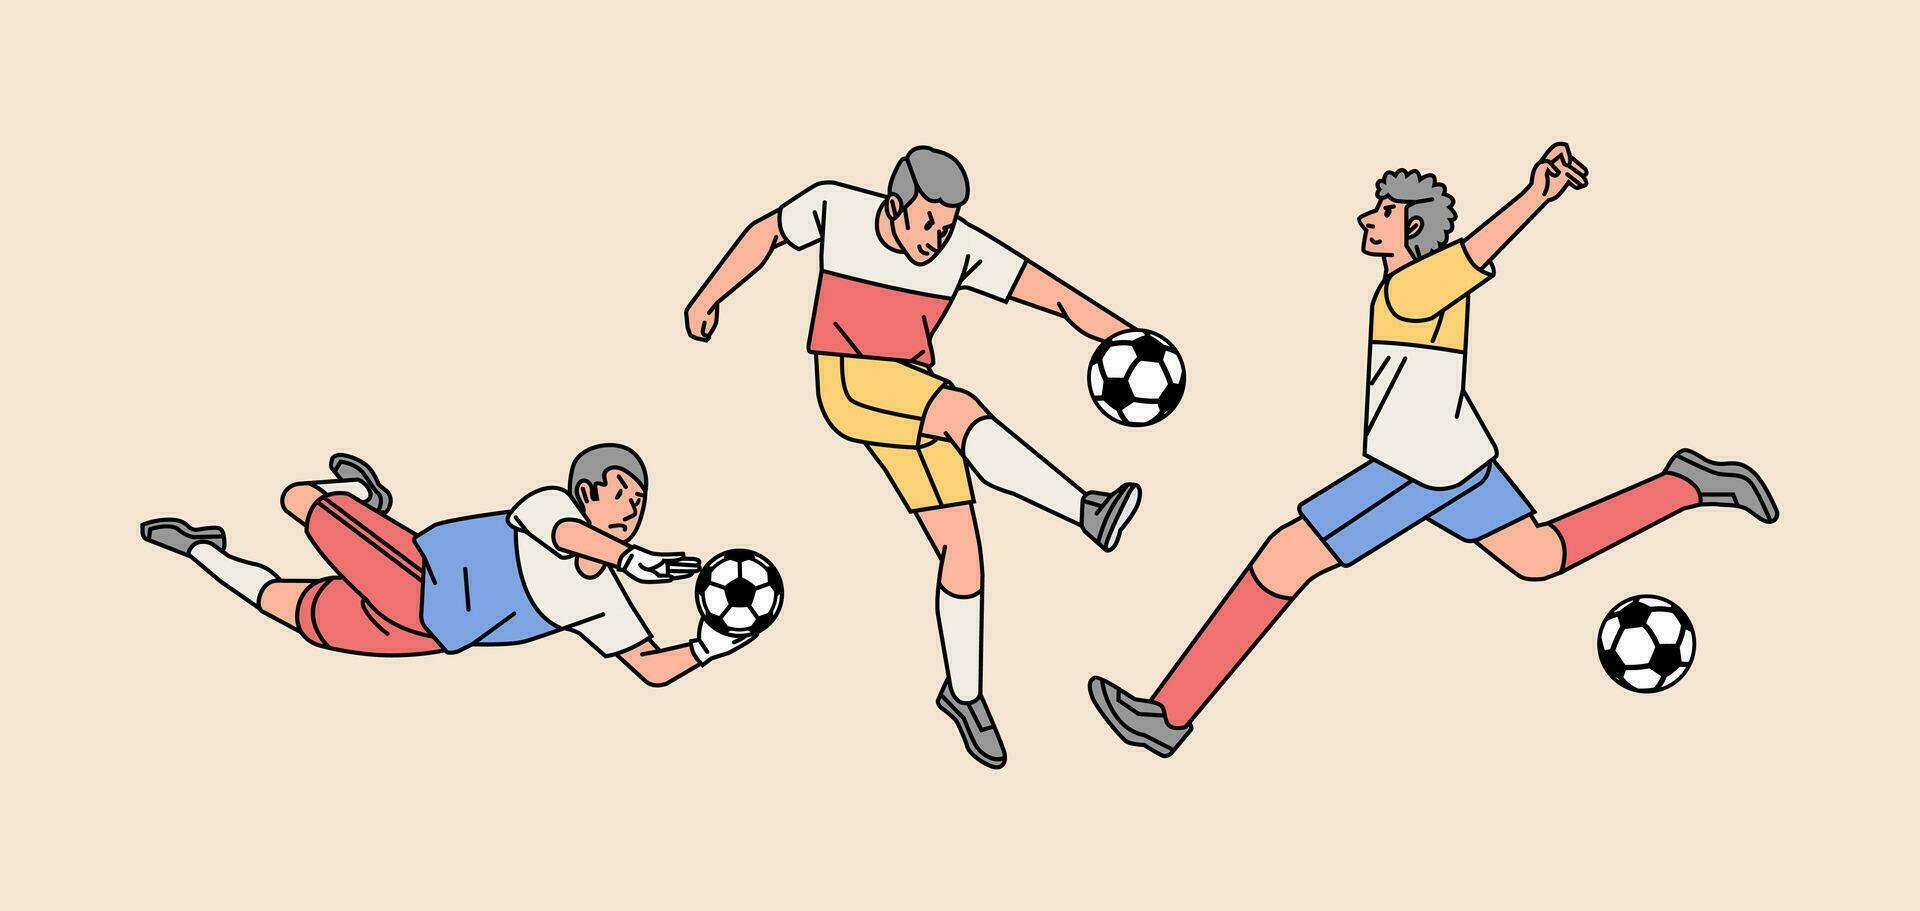 fotboll spelare karaktär i verkan olika poser uppsättning linje stil illustration vektor